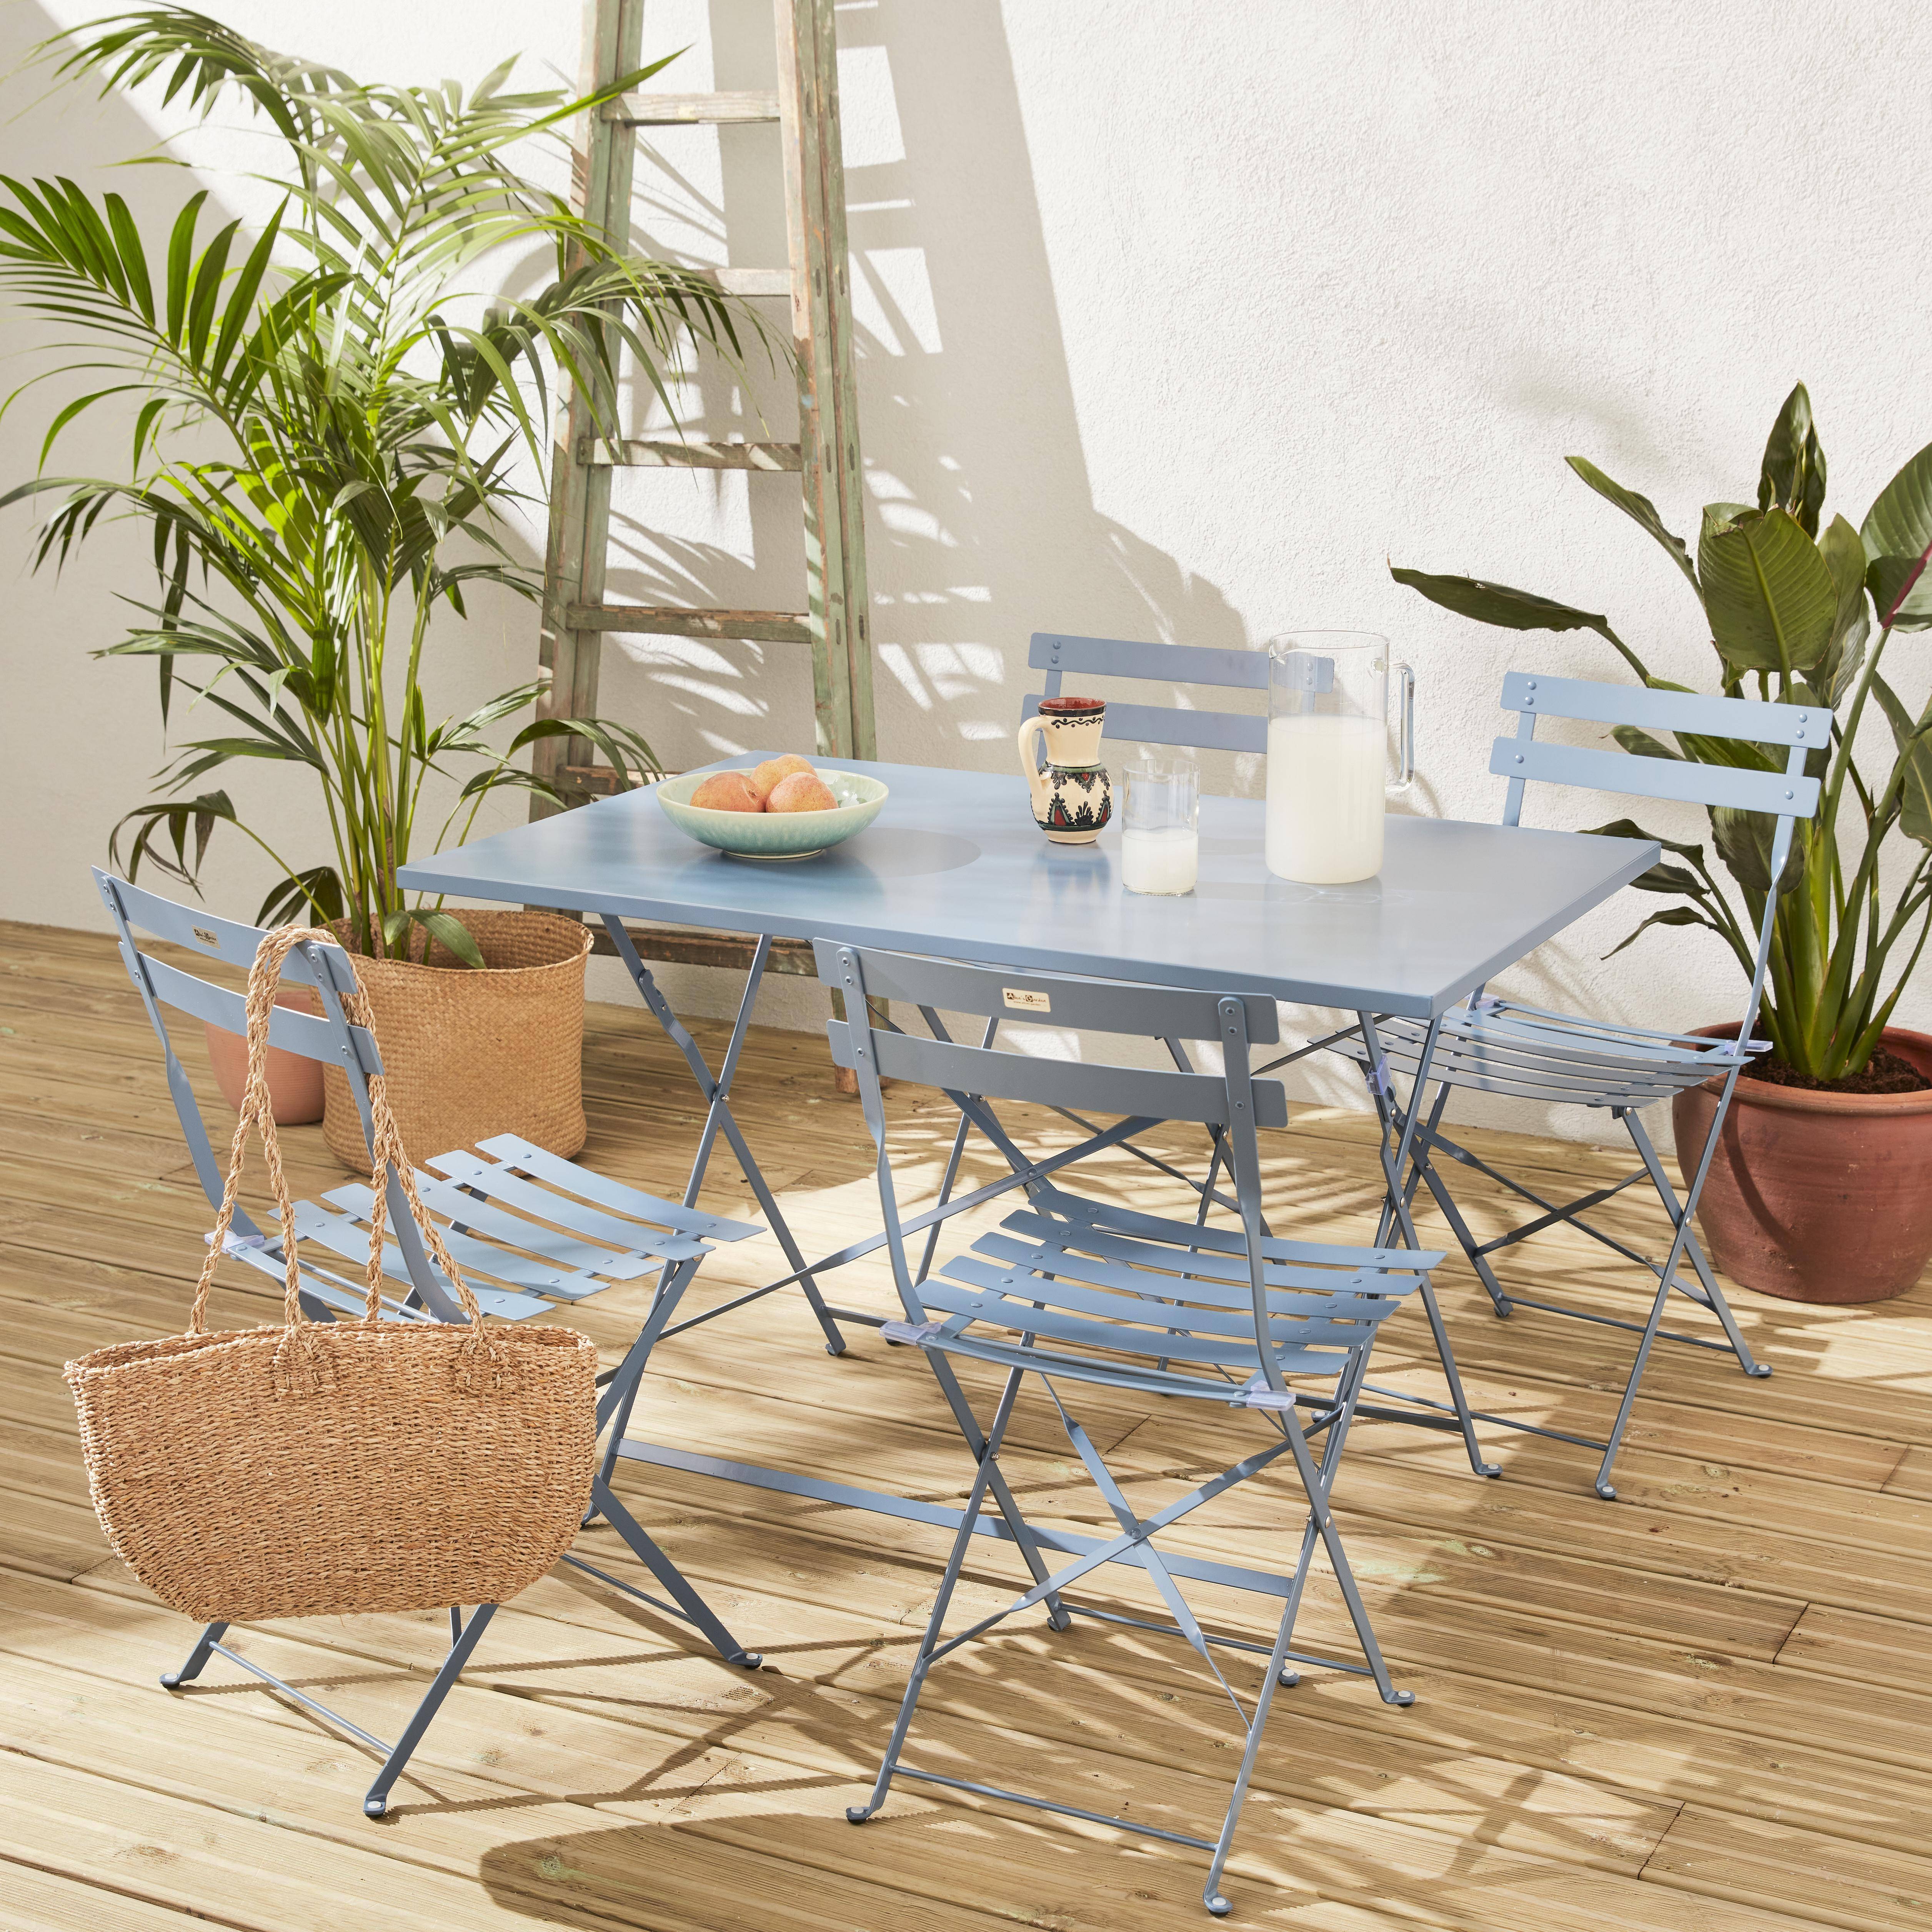 Salotto da giardino, bistrot, pieghevole - modello: Emilia, rettangolare, colore: Blu ombreggiato - Tavolo, dimensioni: 110x70cm, con quattro sedie pieghevoli, acciaio termolaccato Photo1